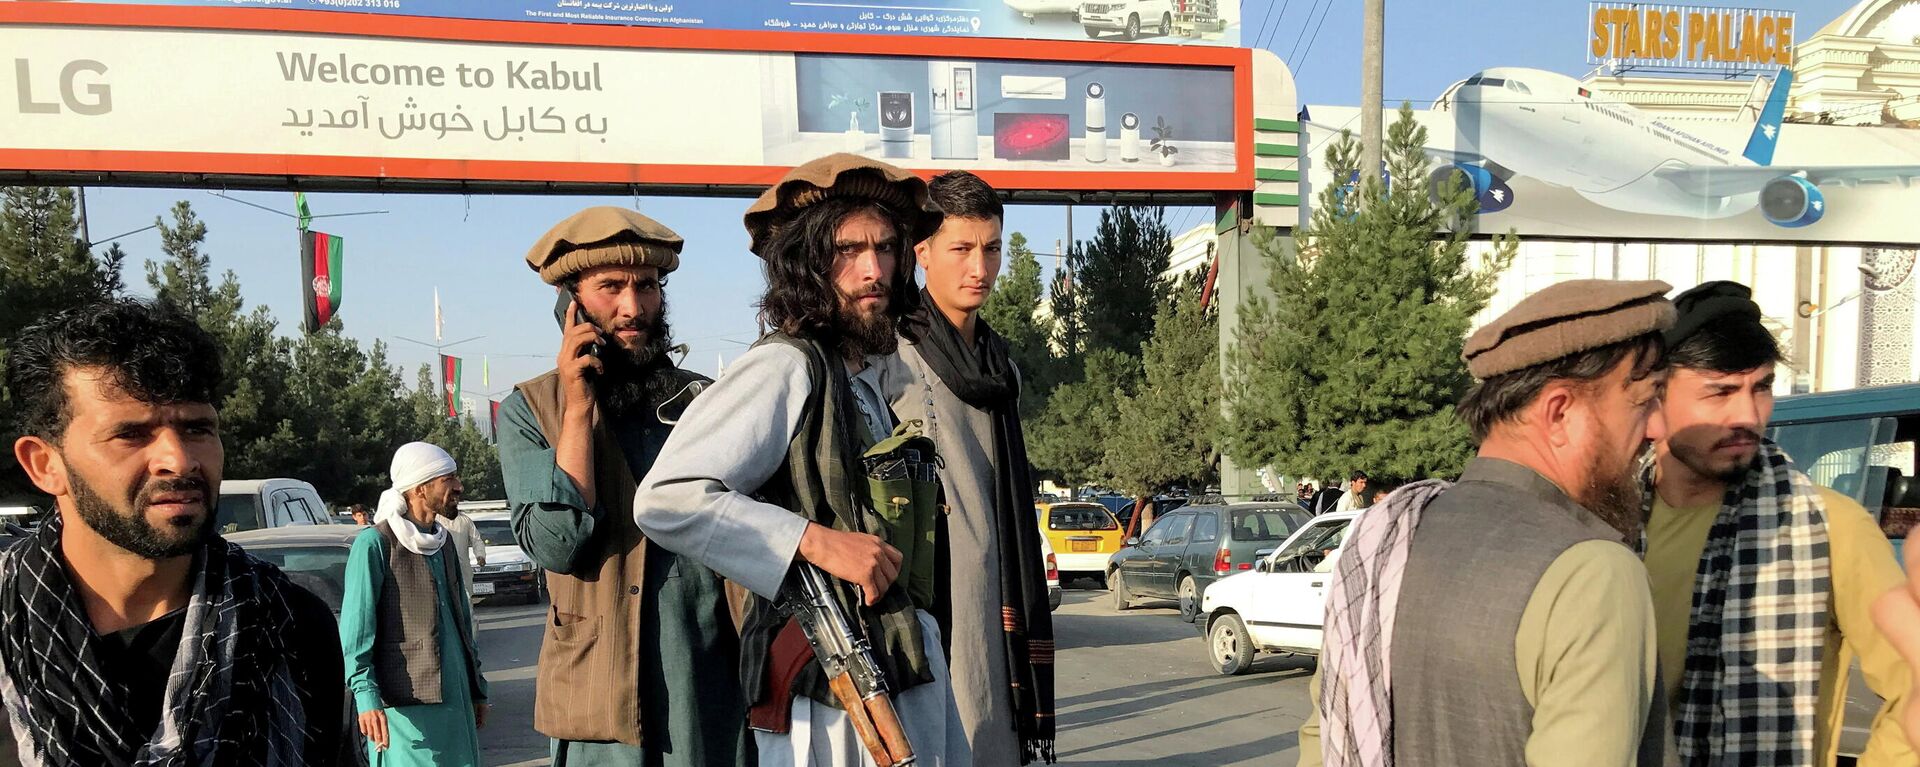 Talibanes en el aeropuerto de Kabul - Sputnik Mundo, 1920, 16.08.2021